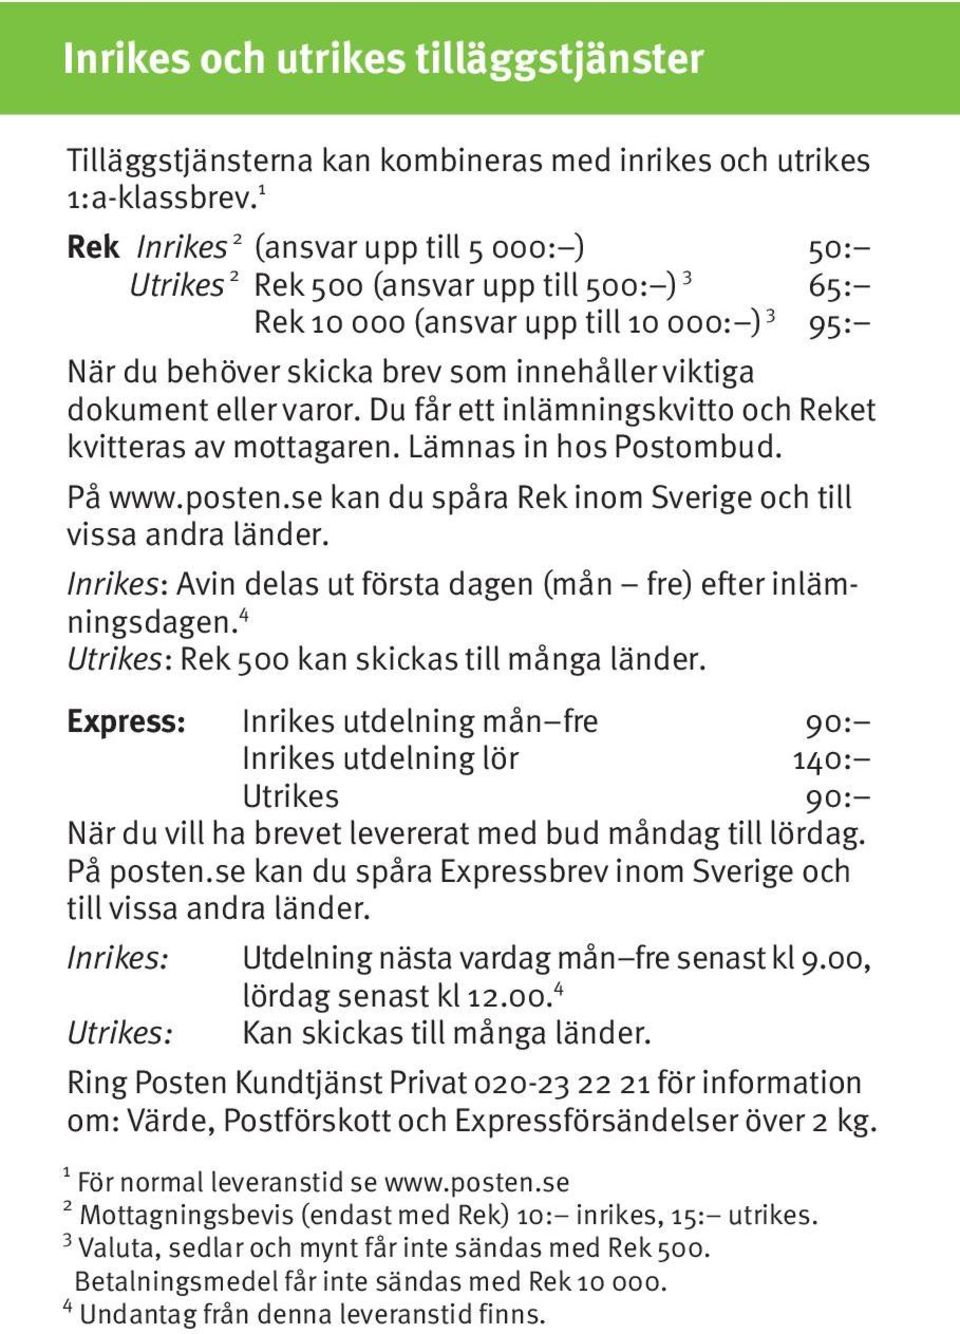 eller varor. Du får ett inlämningskvitto och Reket kvitteras av mottagaren. Lämnas in hos Postombud. På www.posten.se kan du spåra Rek inom Sverige och till vissa andra länder.